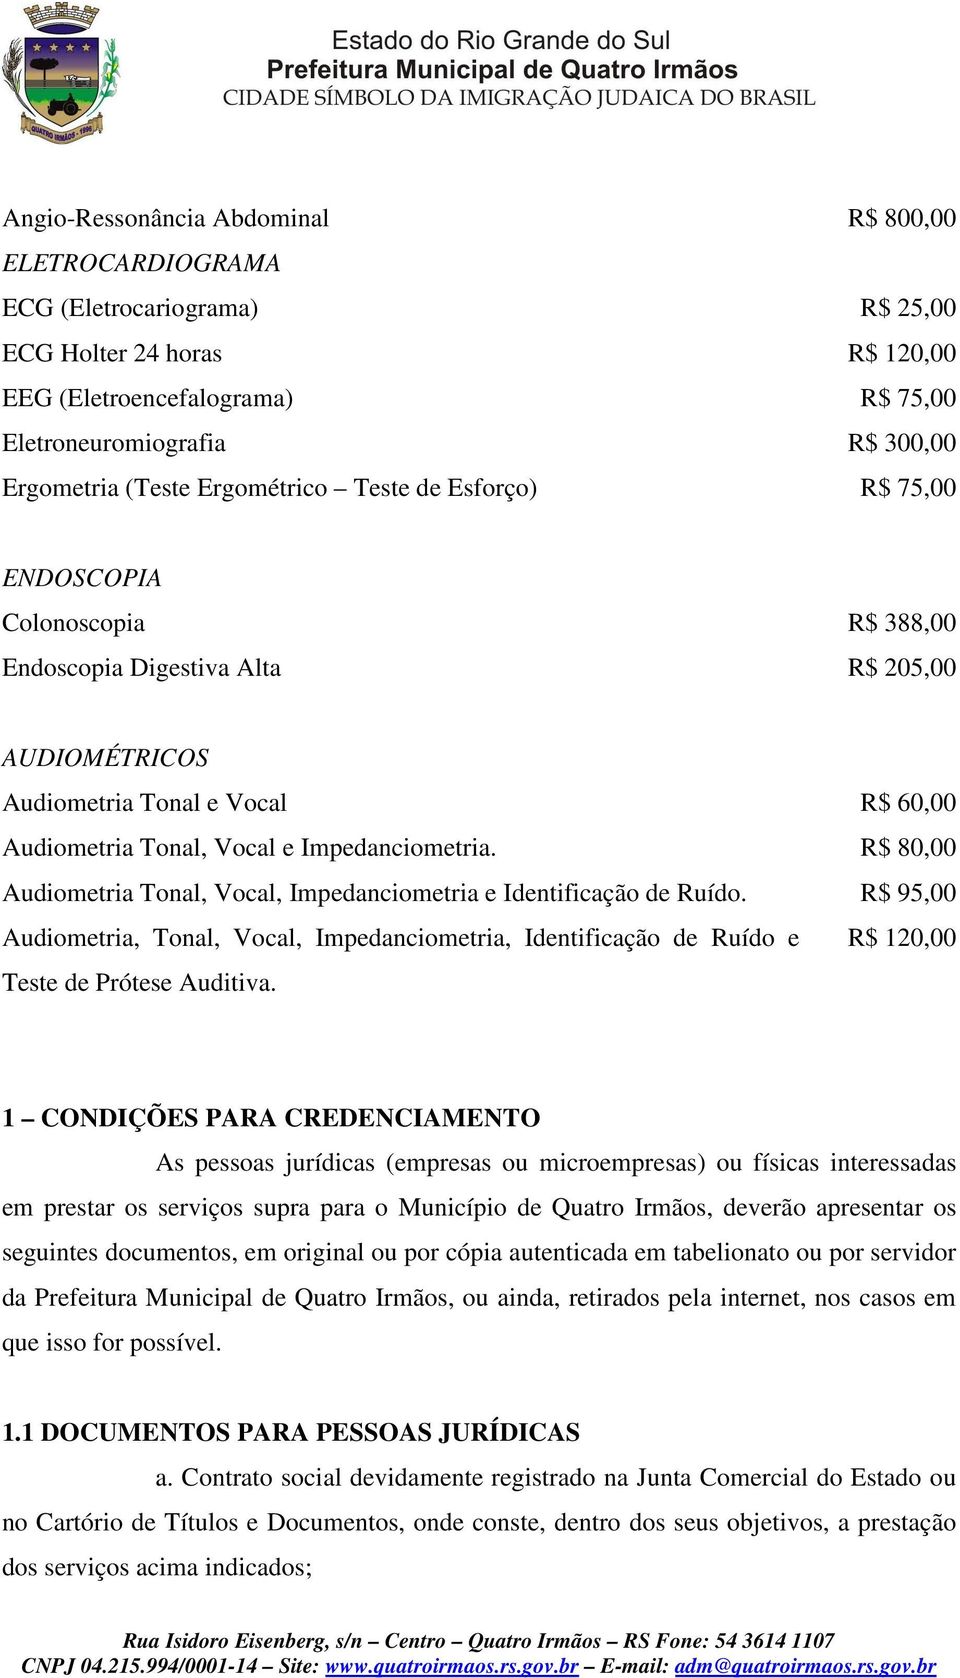 Impedanciometria. R$ 80,00 Audiometria Tonal, Vocal, Impedanciometria e Identificação de Ruído.